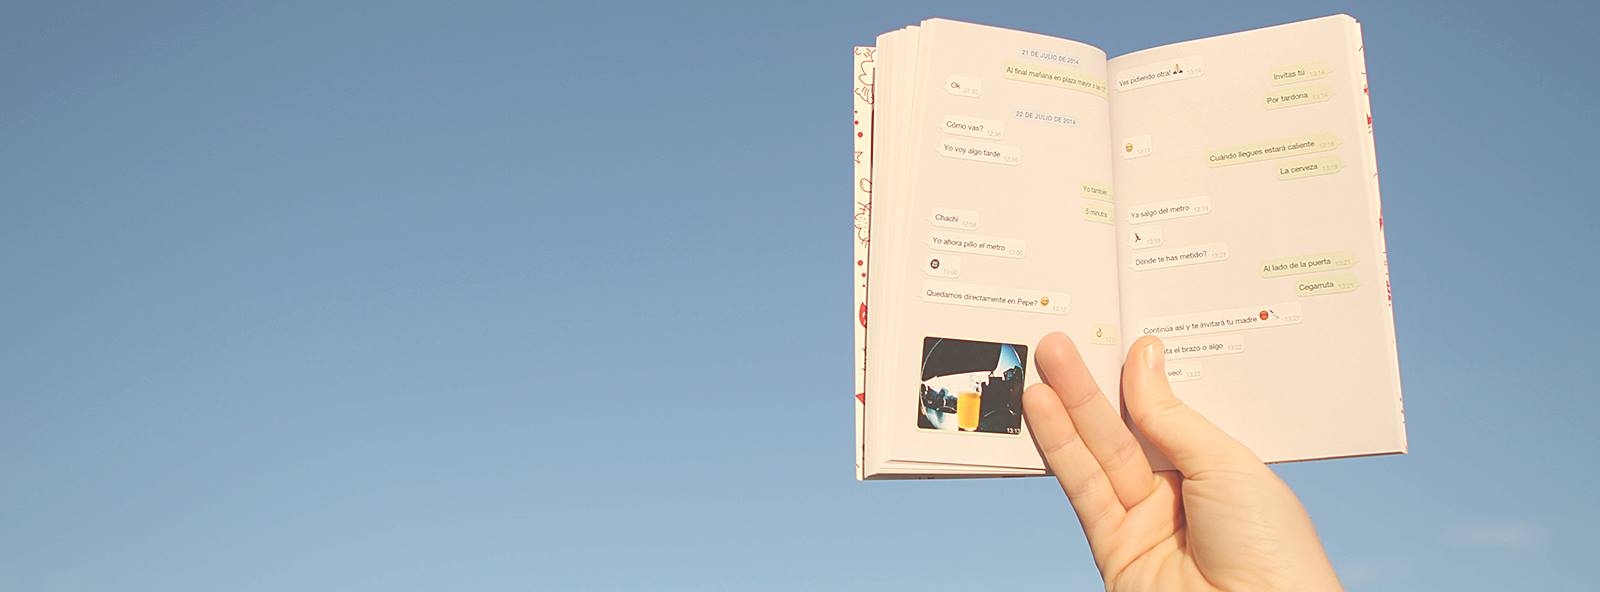 El emprendedor Pau Moreno crea Tiny books, que convierte las conversaciones de WhatsApp en un libro